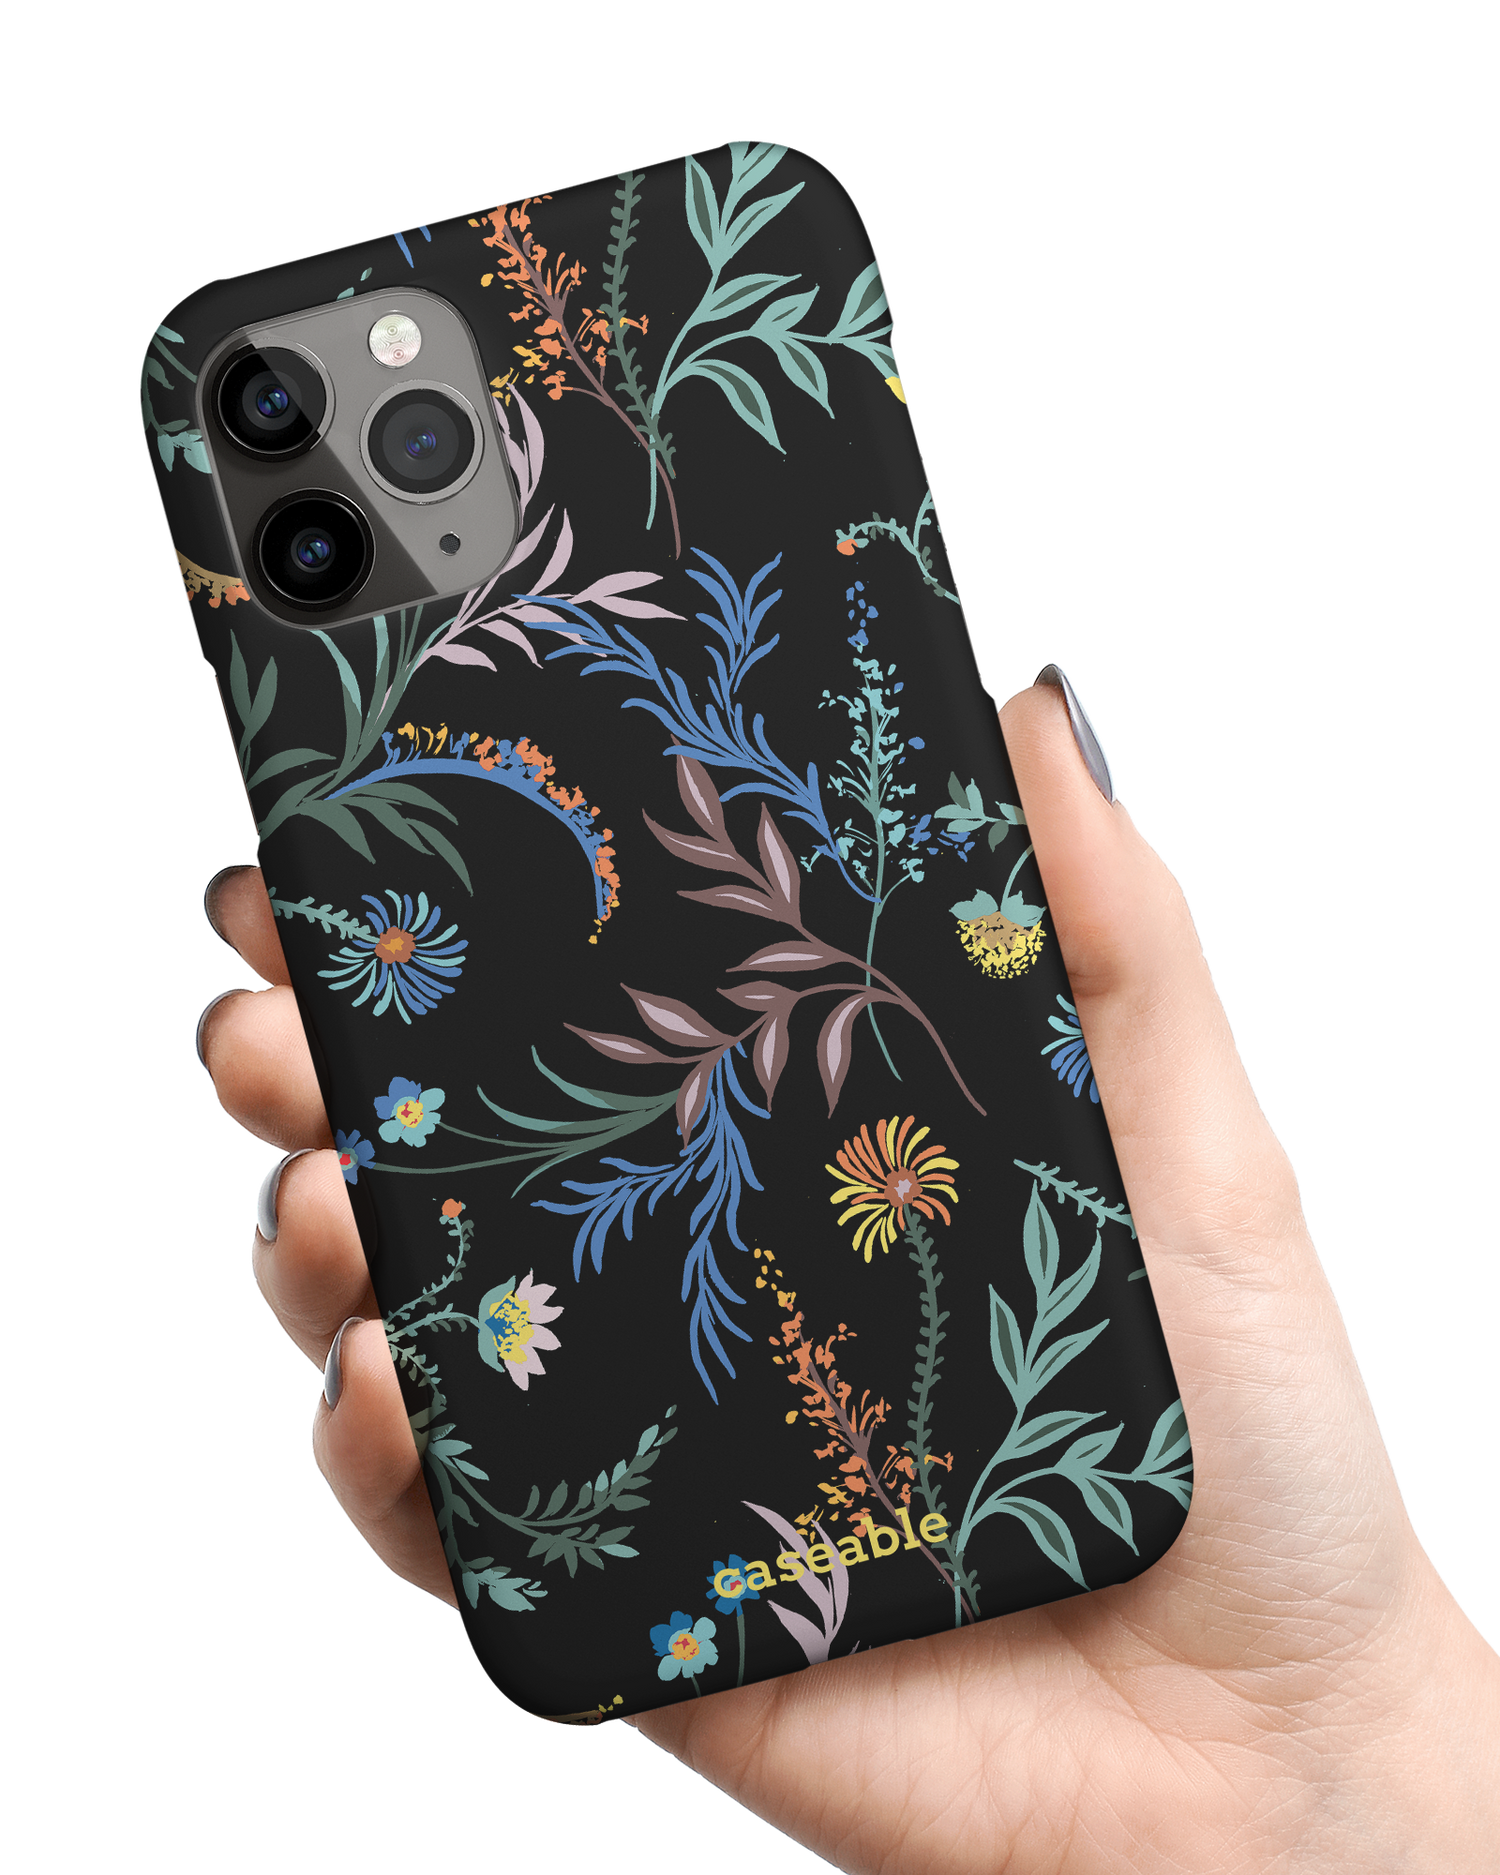 Woodland Spring Floral Hardcase Handyhülle Apple iPhone 11 Pro Max in der Hand gehalten